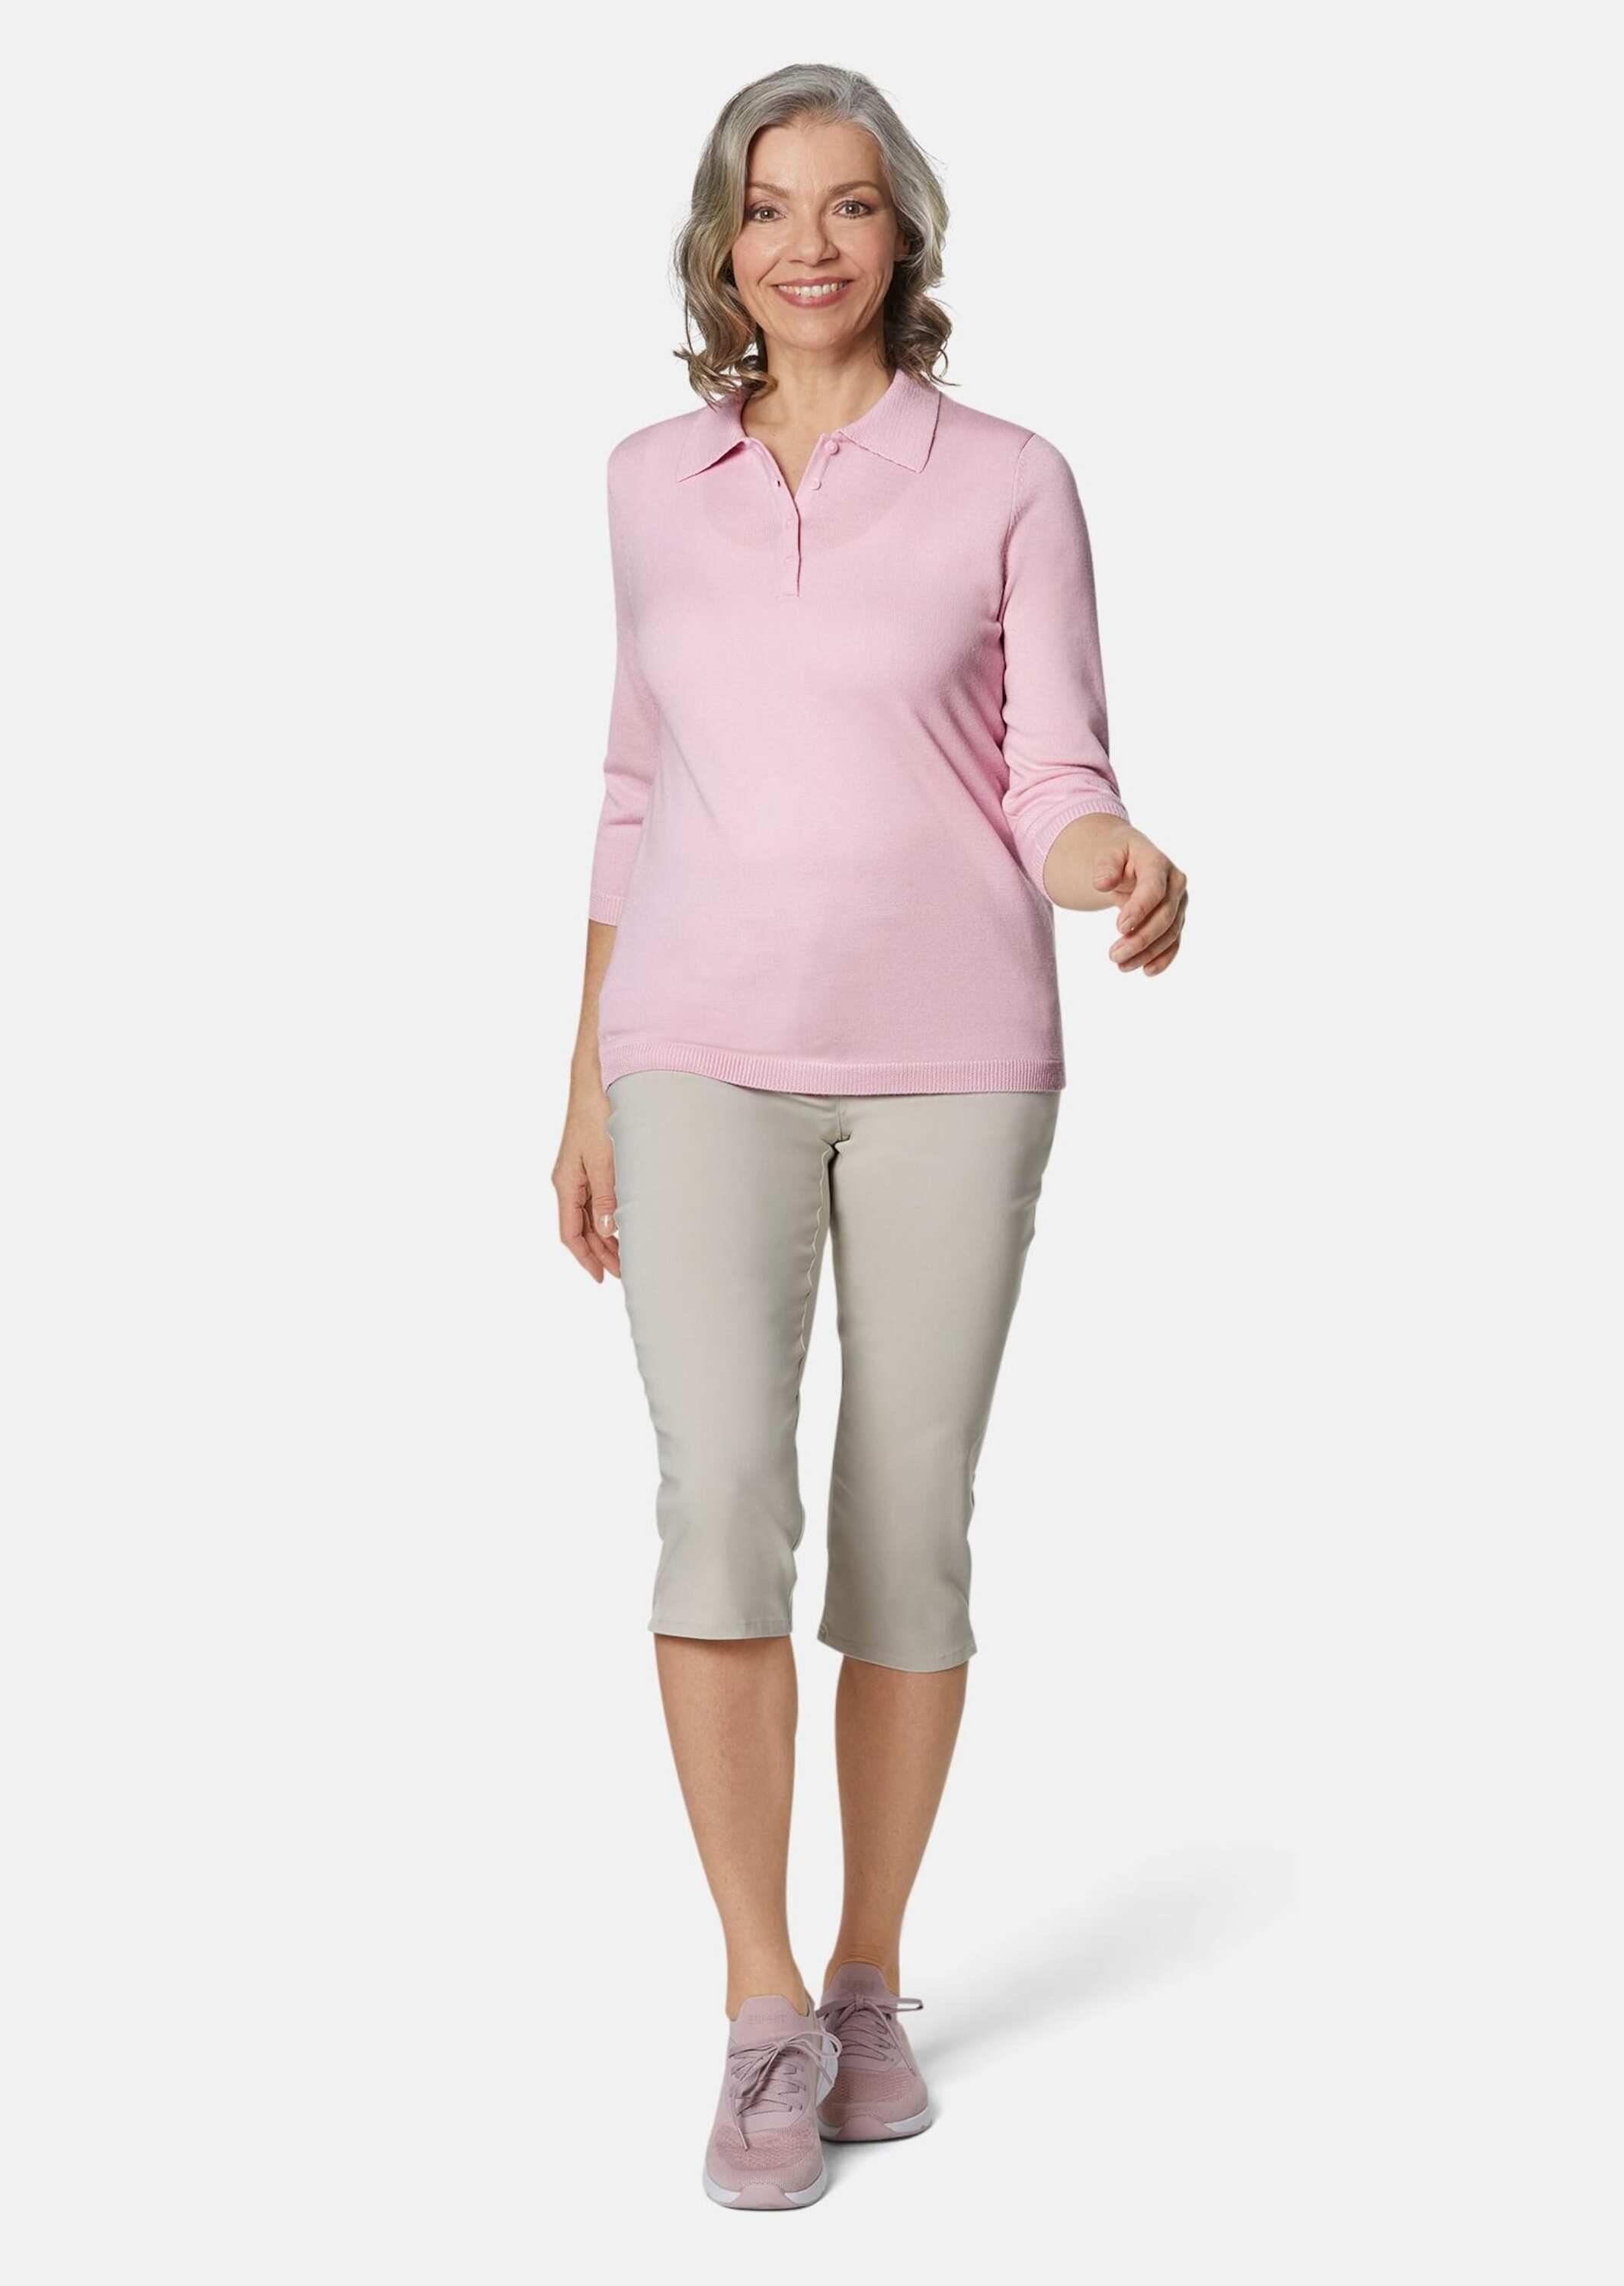 rosa Pullover hochwertiger in Qualität Strickpullover GOLDNER Kurzgröße: